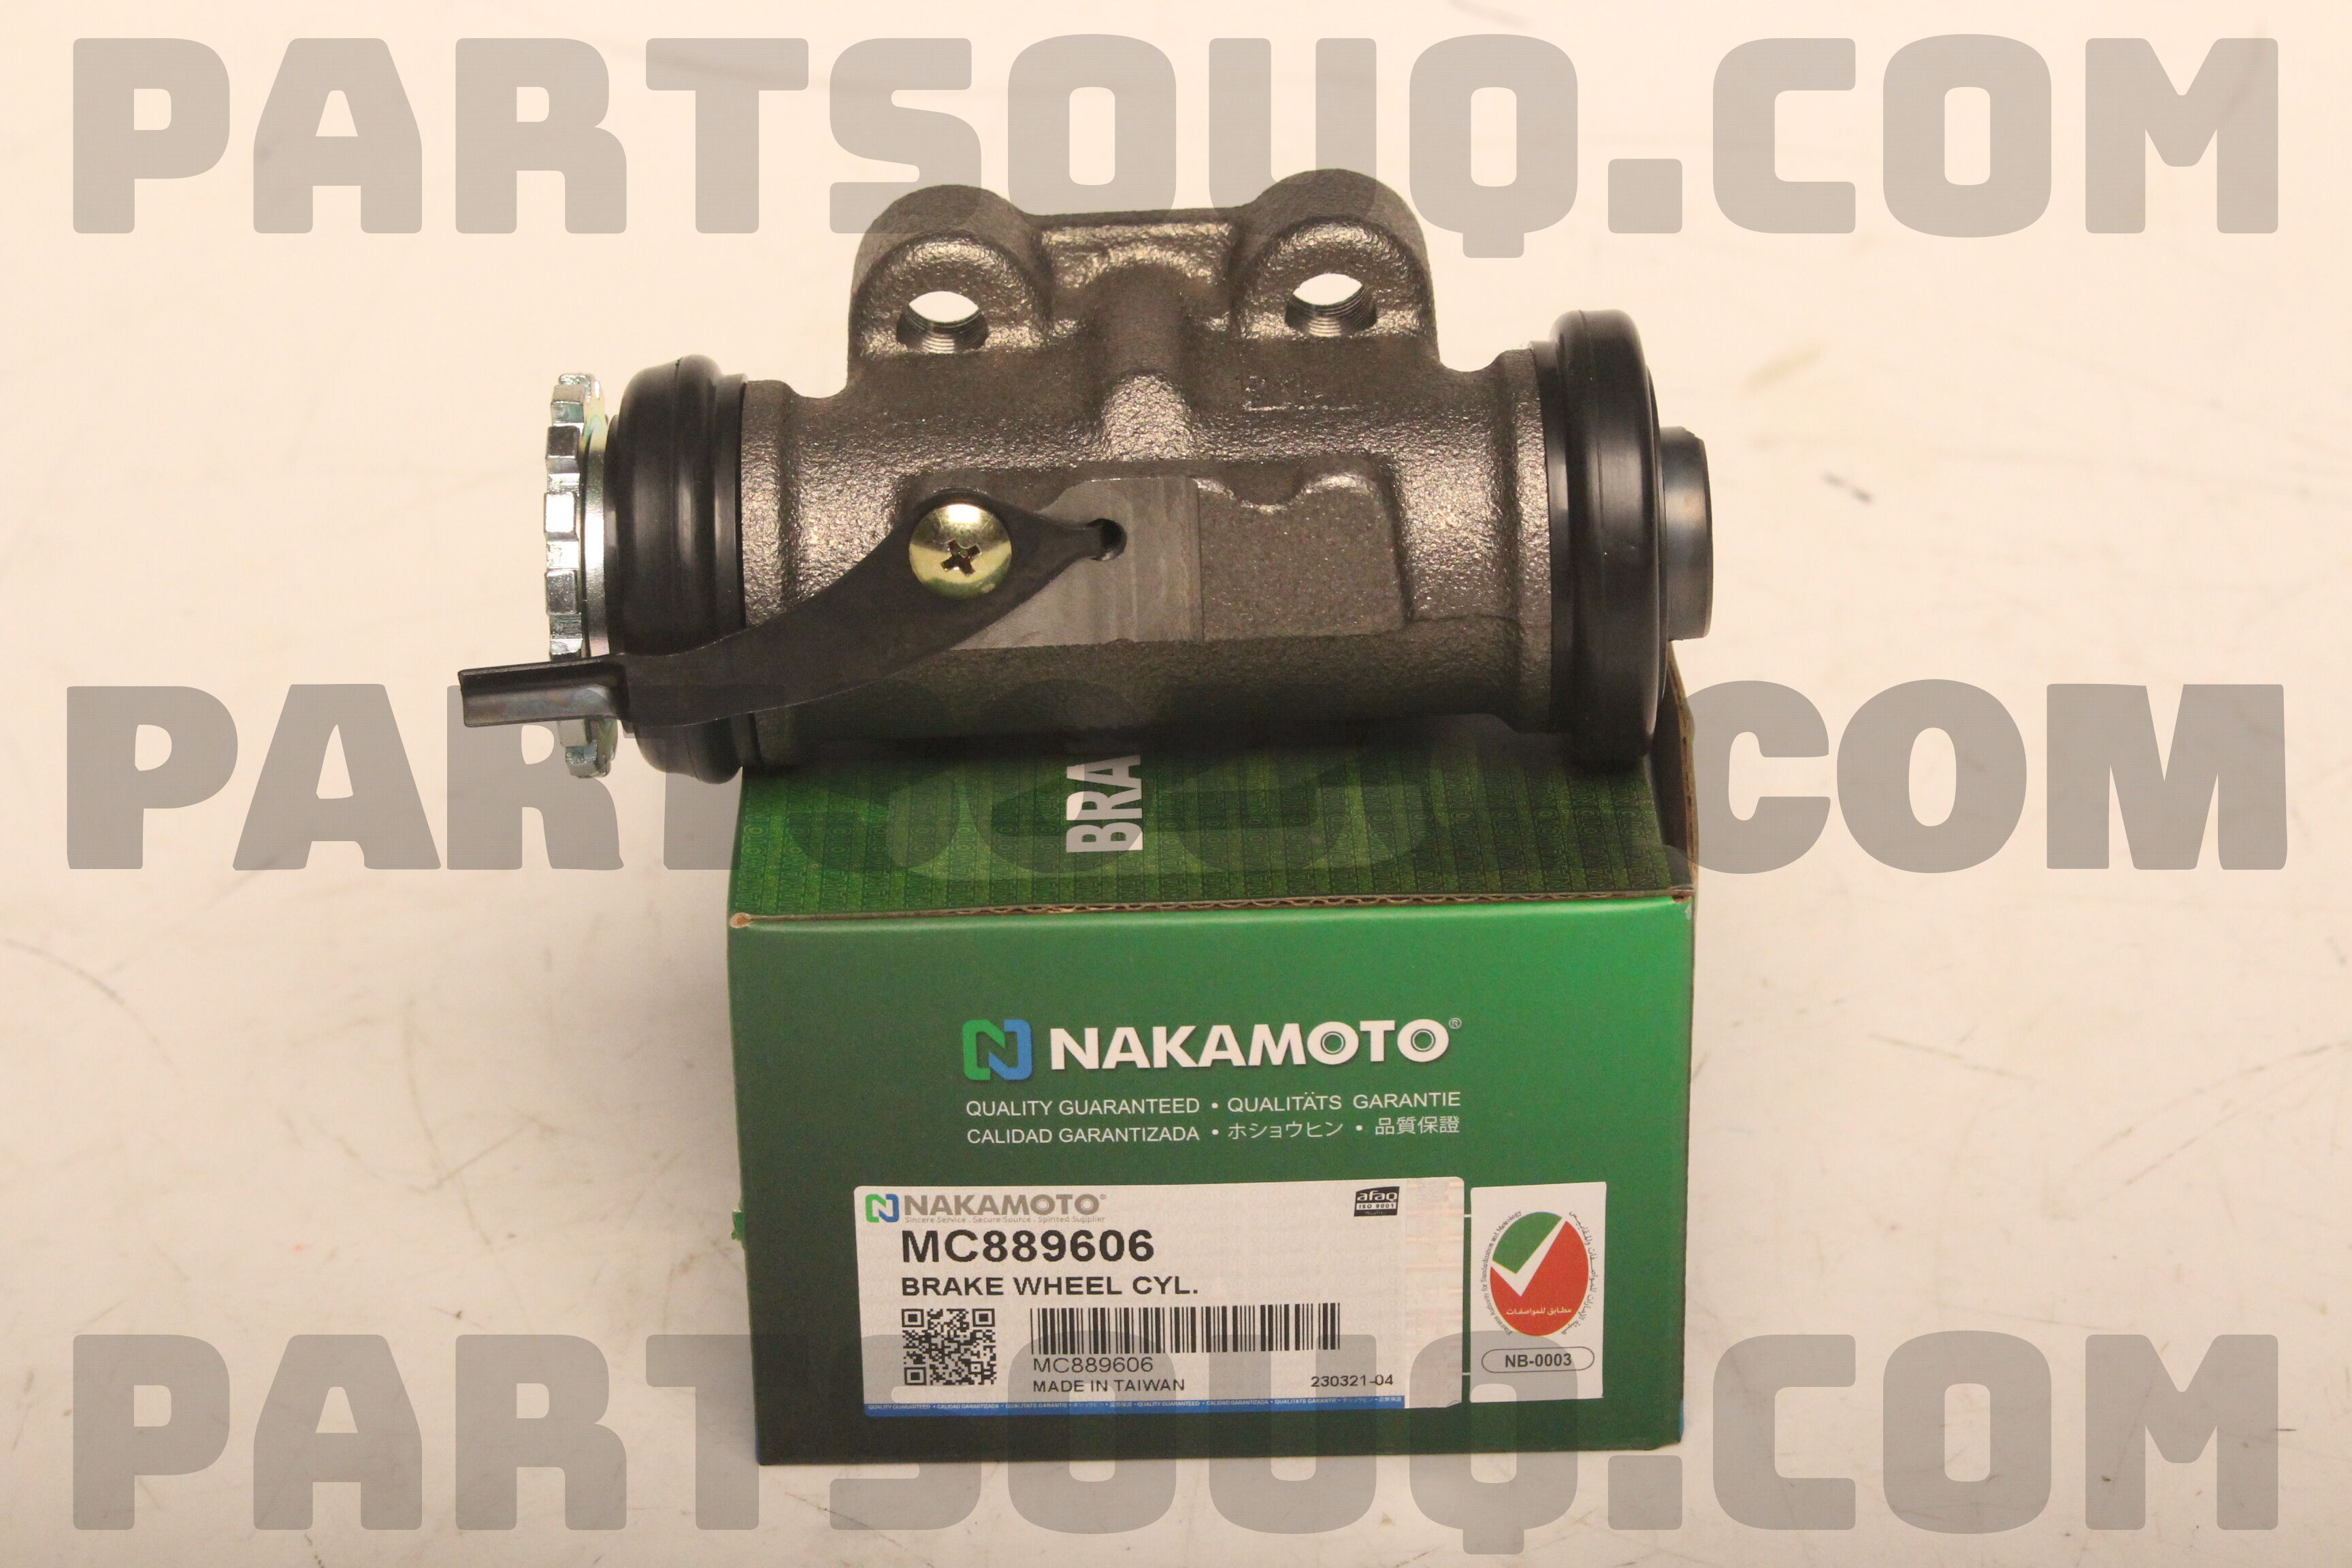 BRAKE WHEEL CYL MC889606 | Nakamoto Parts | PartSouq